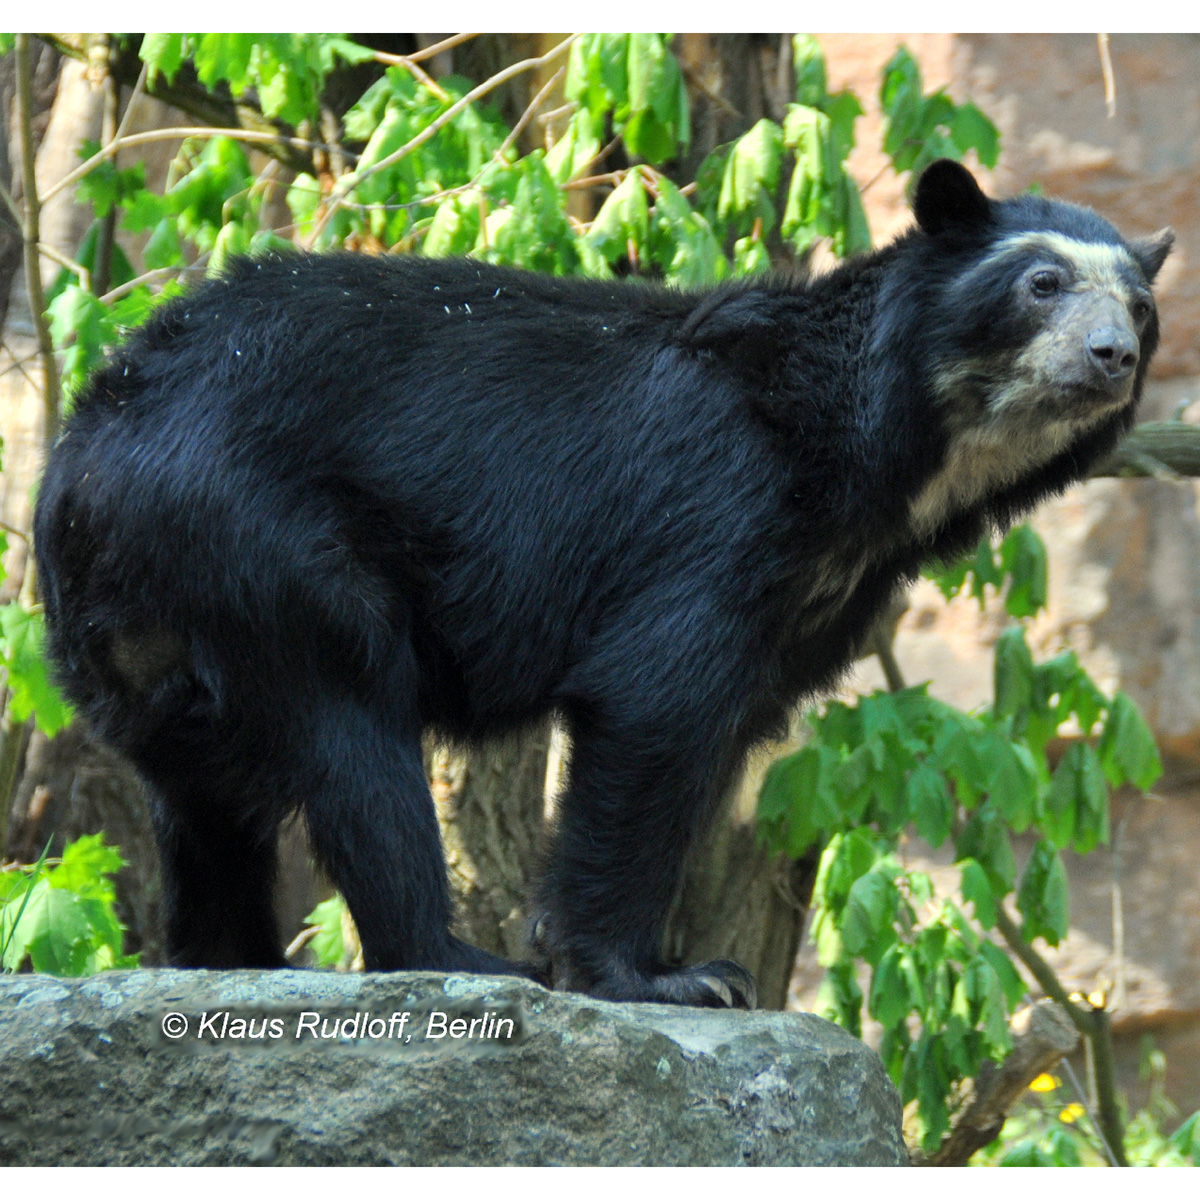 Очковый медведь (Tremarctos ornatus) Фото №1